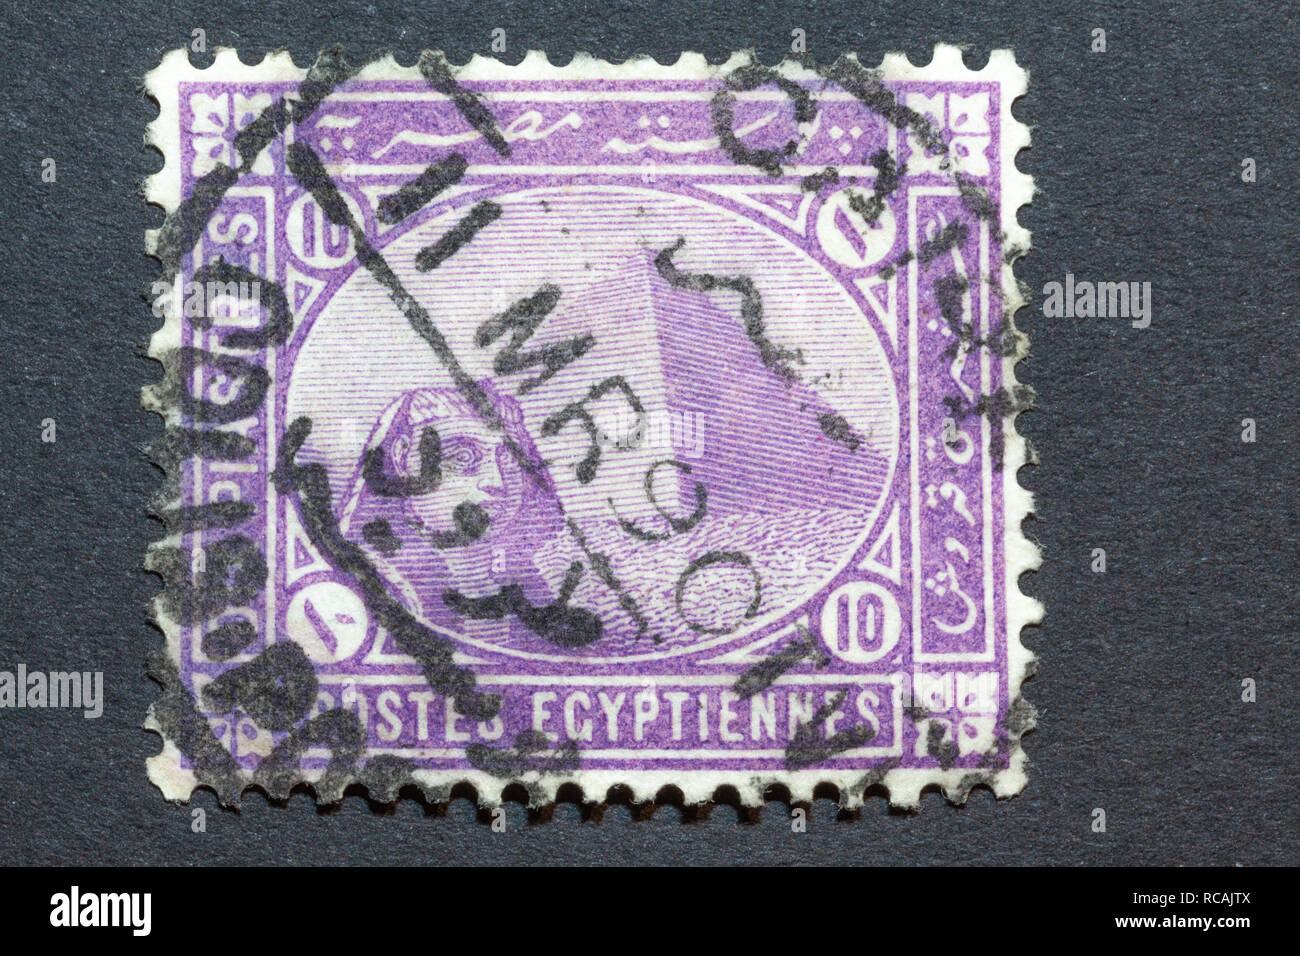 Norimberga, Germania - 14 Gennaio 2019: UN 1889 Egitto usato francobollo con la sfinge nella parte anteriore della piramide di Cheope. La piramide è un patrimonio mondiale Heri Foto Stock